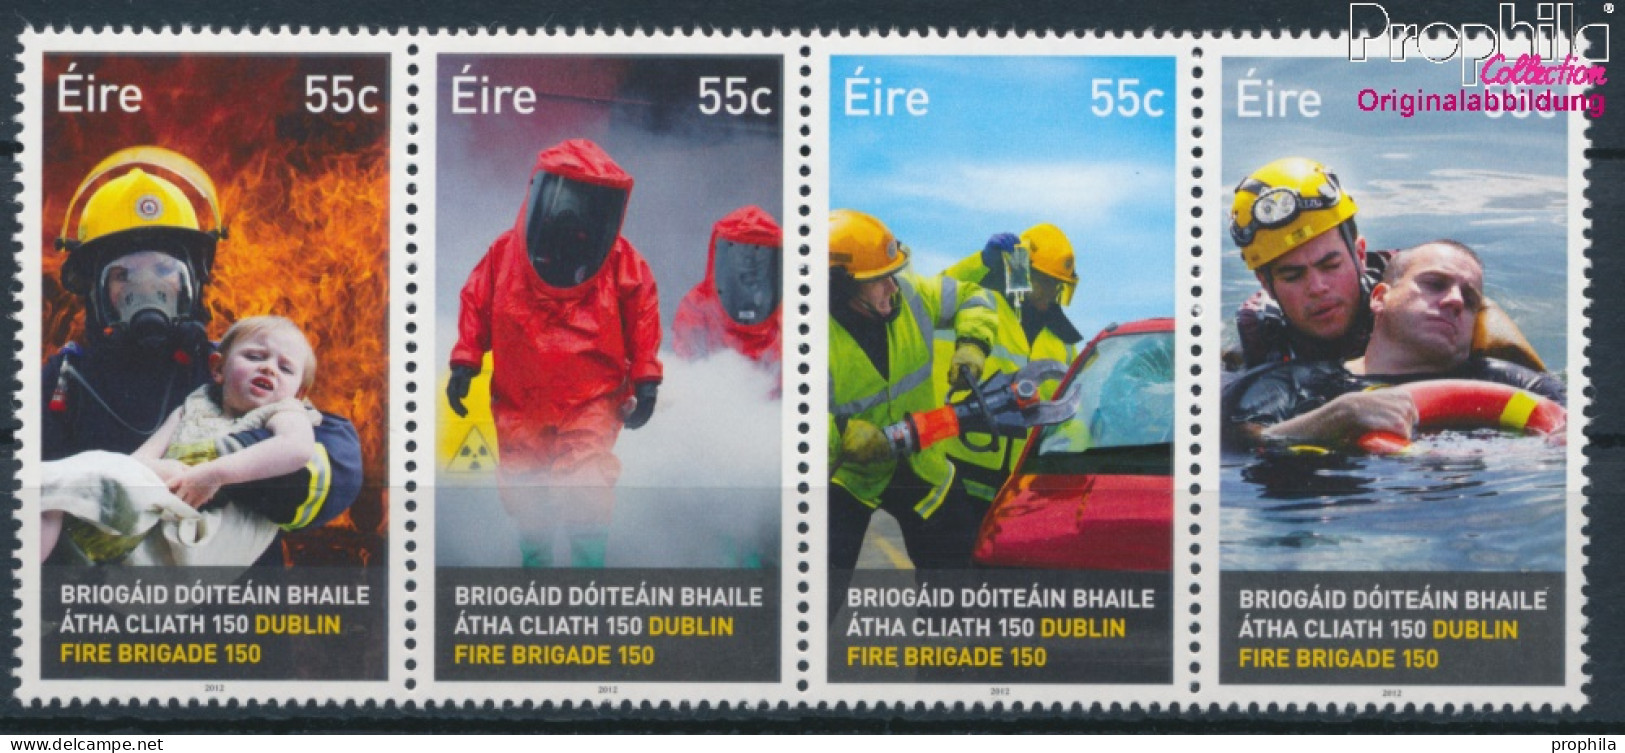 Irland 2022A-2025A Viererstreifen (kompl.Ausg.) Postfrisch 2012 Feuerwehr In Dublin (10348121 - Ungebraucht